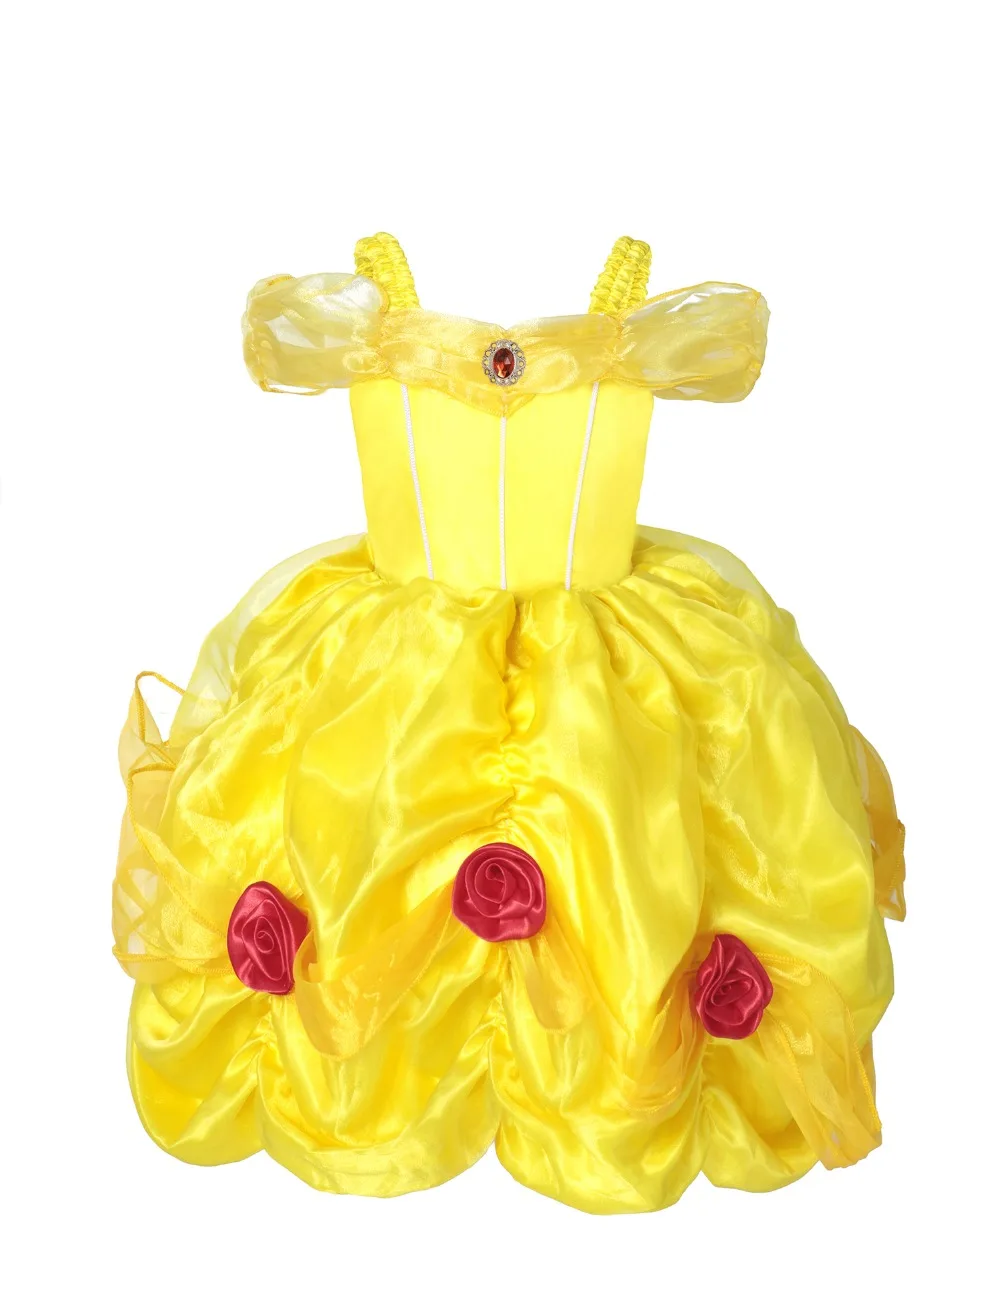 PaMaBa/Детское платье принцессы «Белль»; детское рождественское платье с открытыми плечами для девочек; Карнавальный Костюм «Красавица и Чудовище»; праздничная одежда